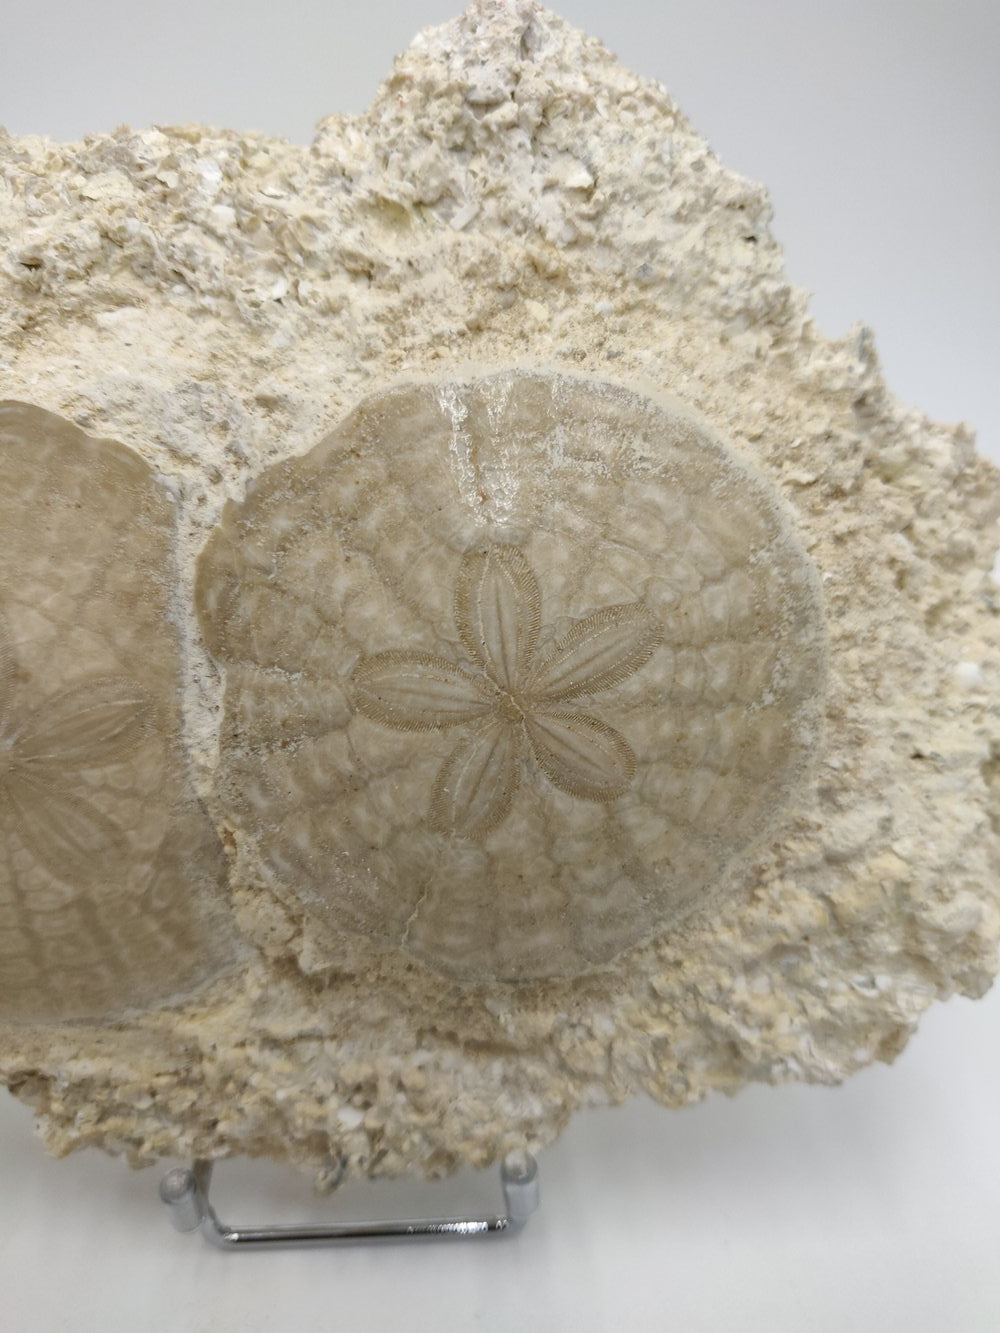 Oursins fossiles fixés sur gangue sédimentaire - Scutella